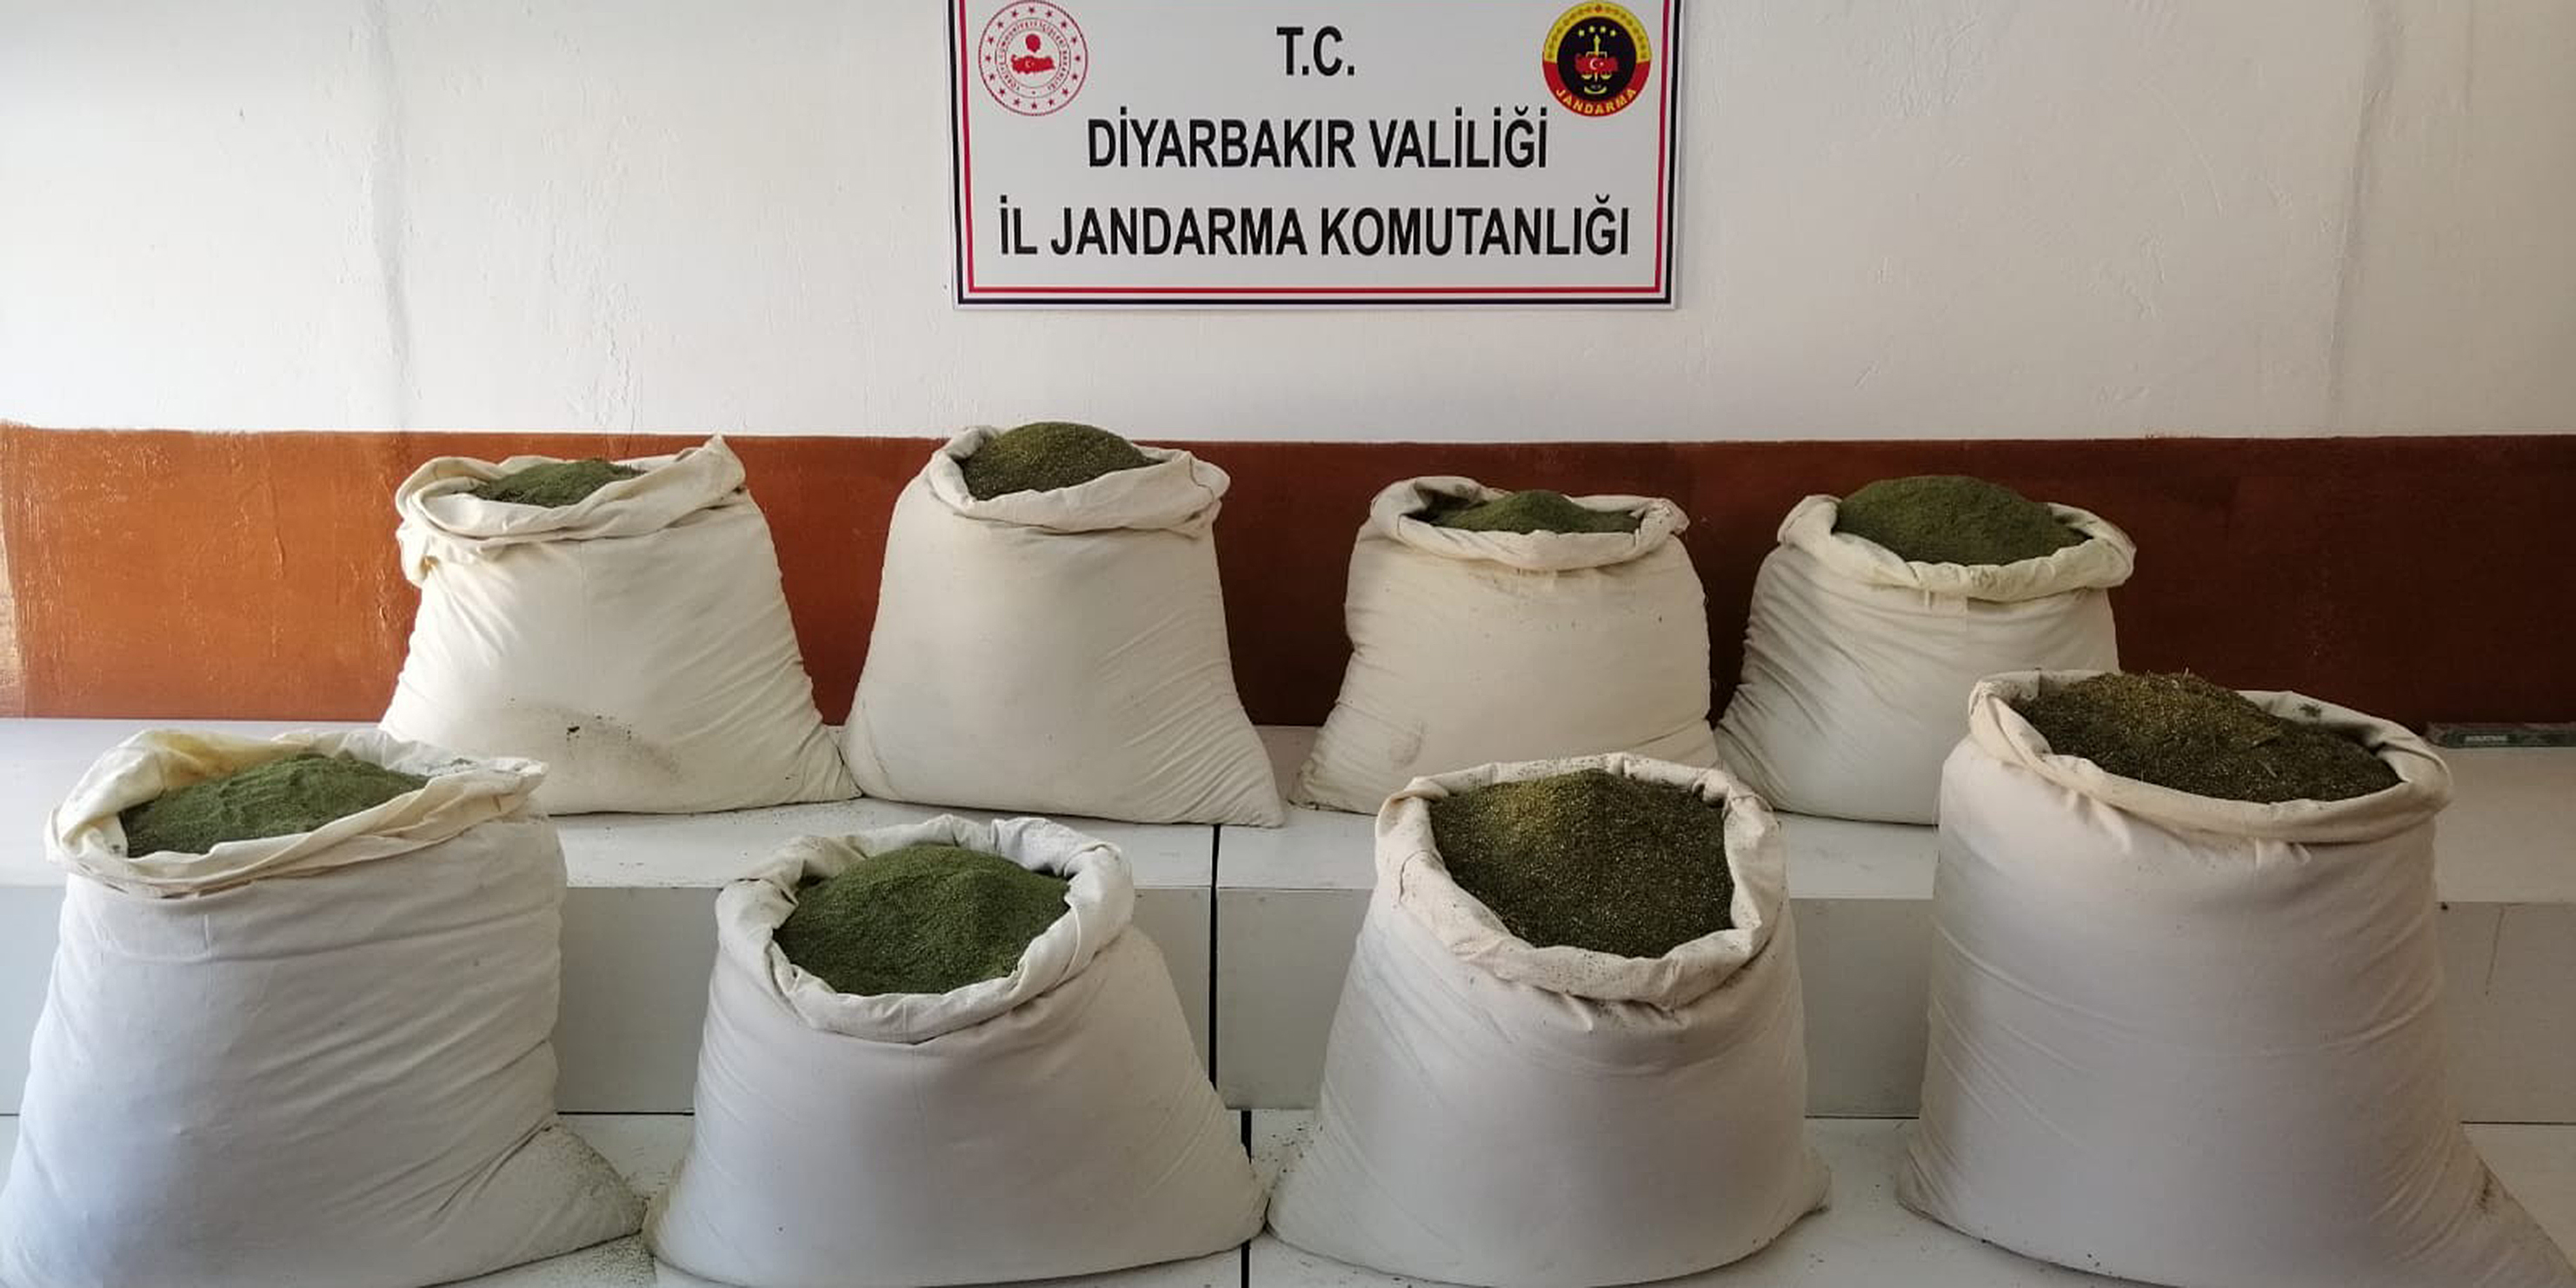 Diyarbakır’da 300 kilogram esrar ele geçirildi